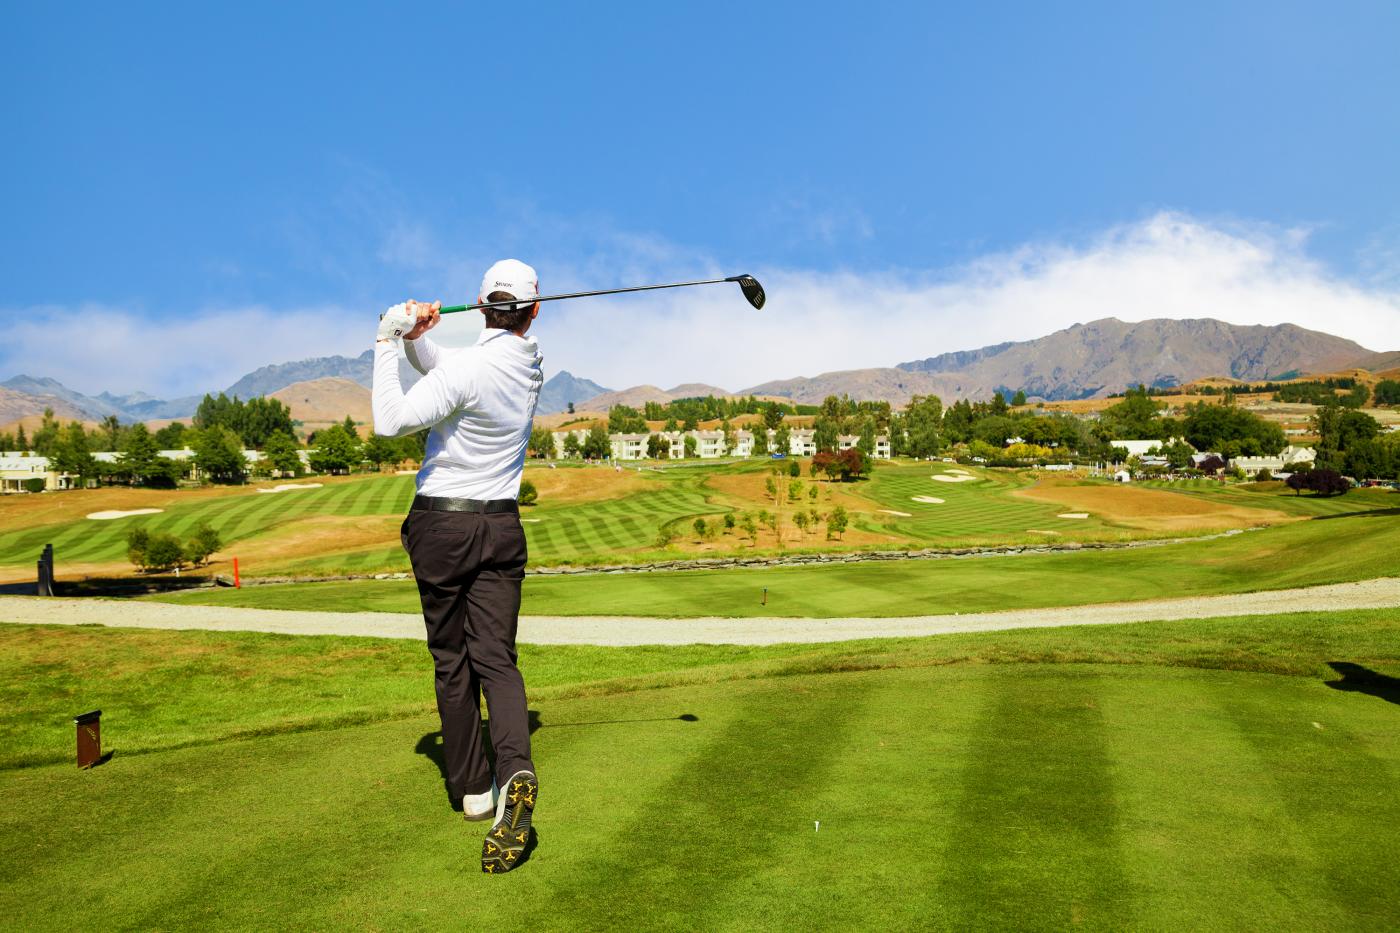 NZ Golf Open at Millbrook Resort